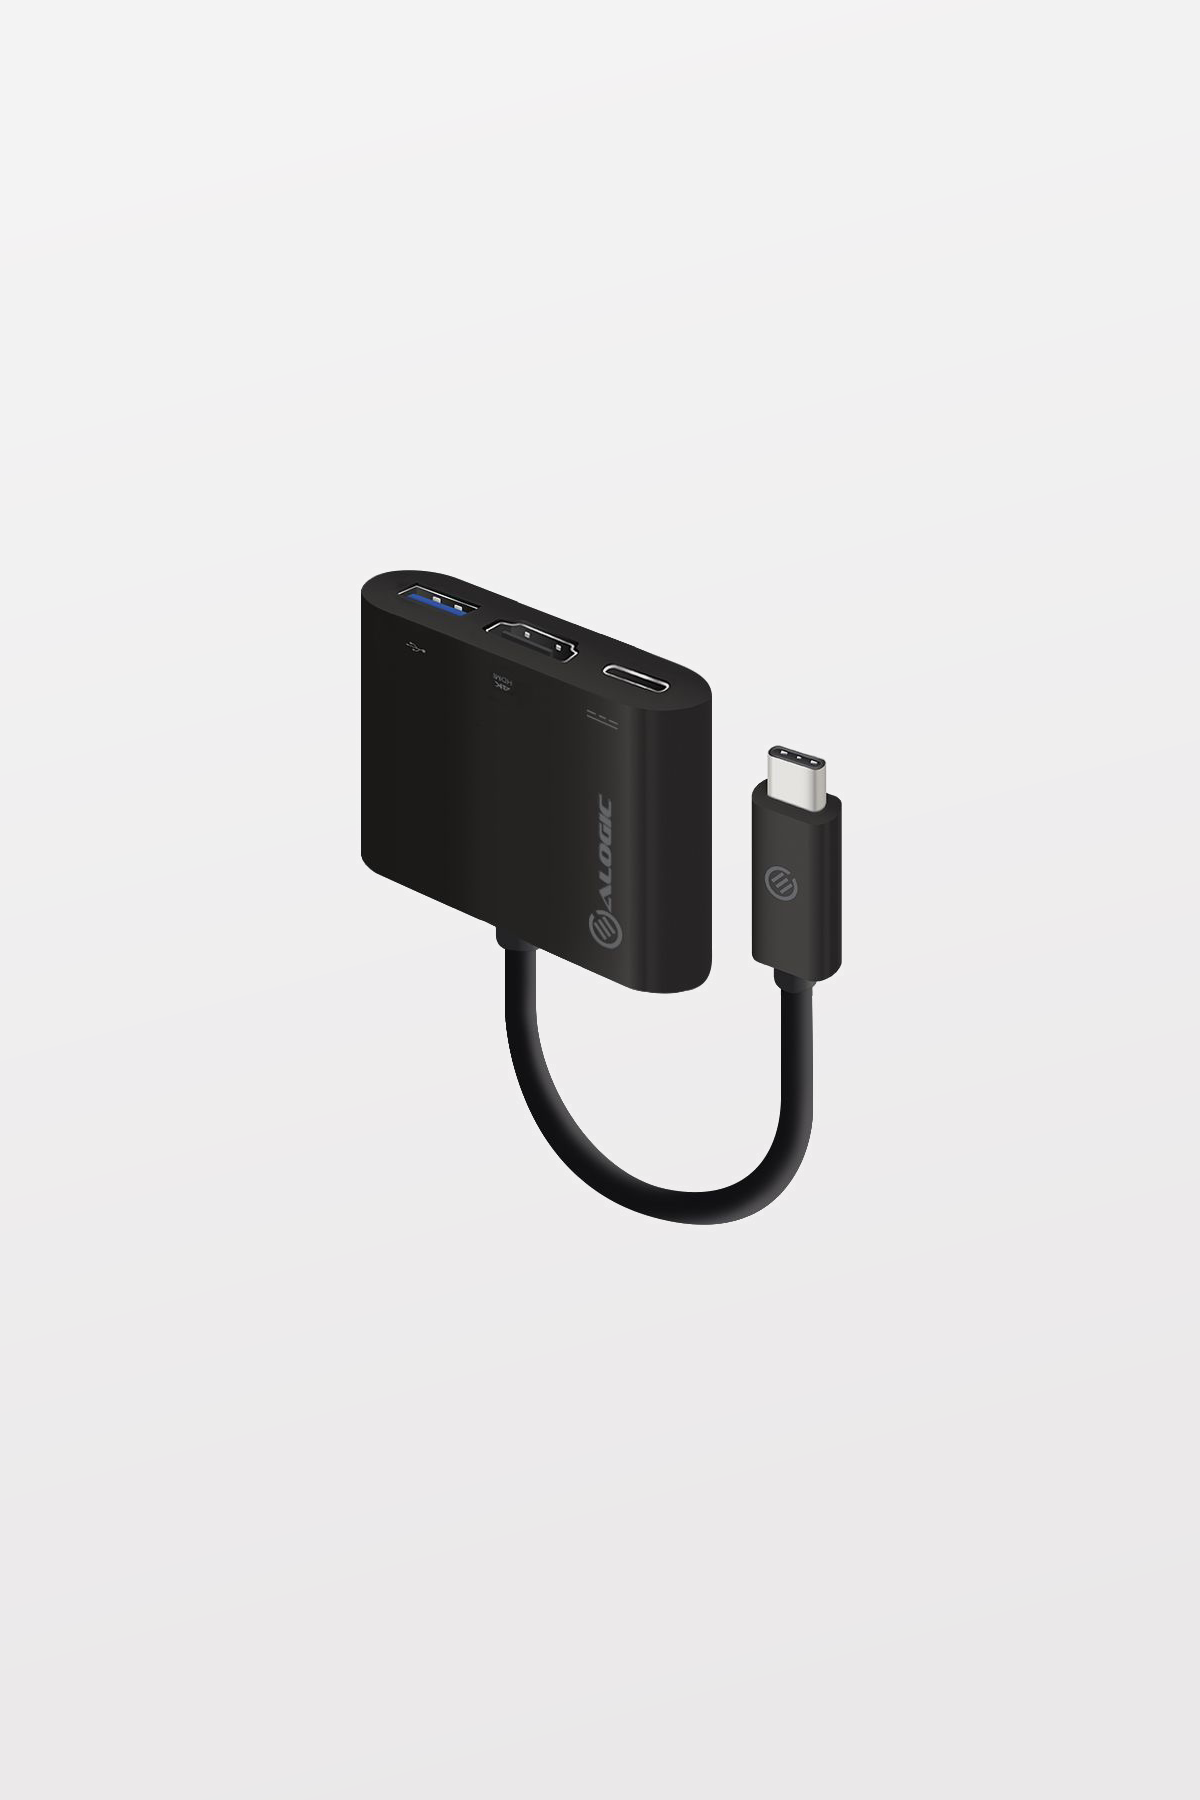 ALOGIC USB-C to HDMI/USB 3.0/USB-C Adapter - 4K - 10cm